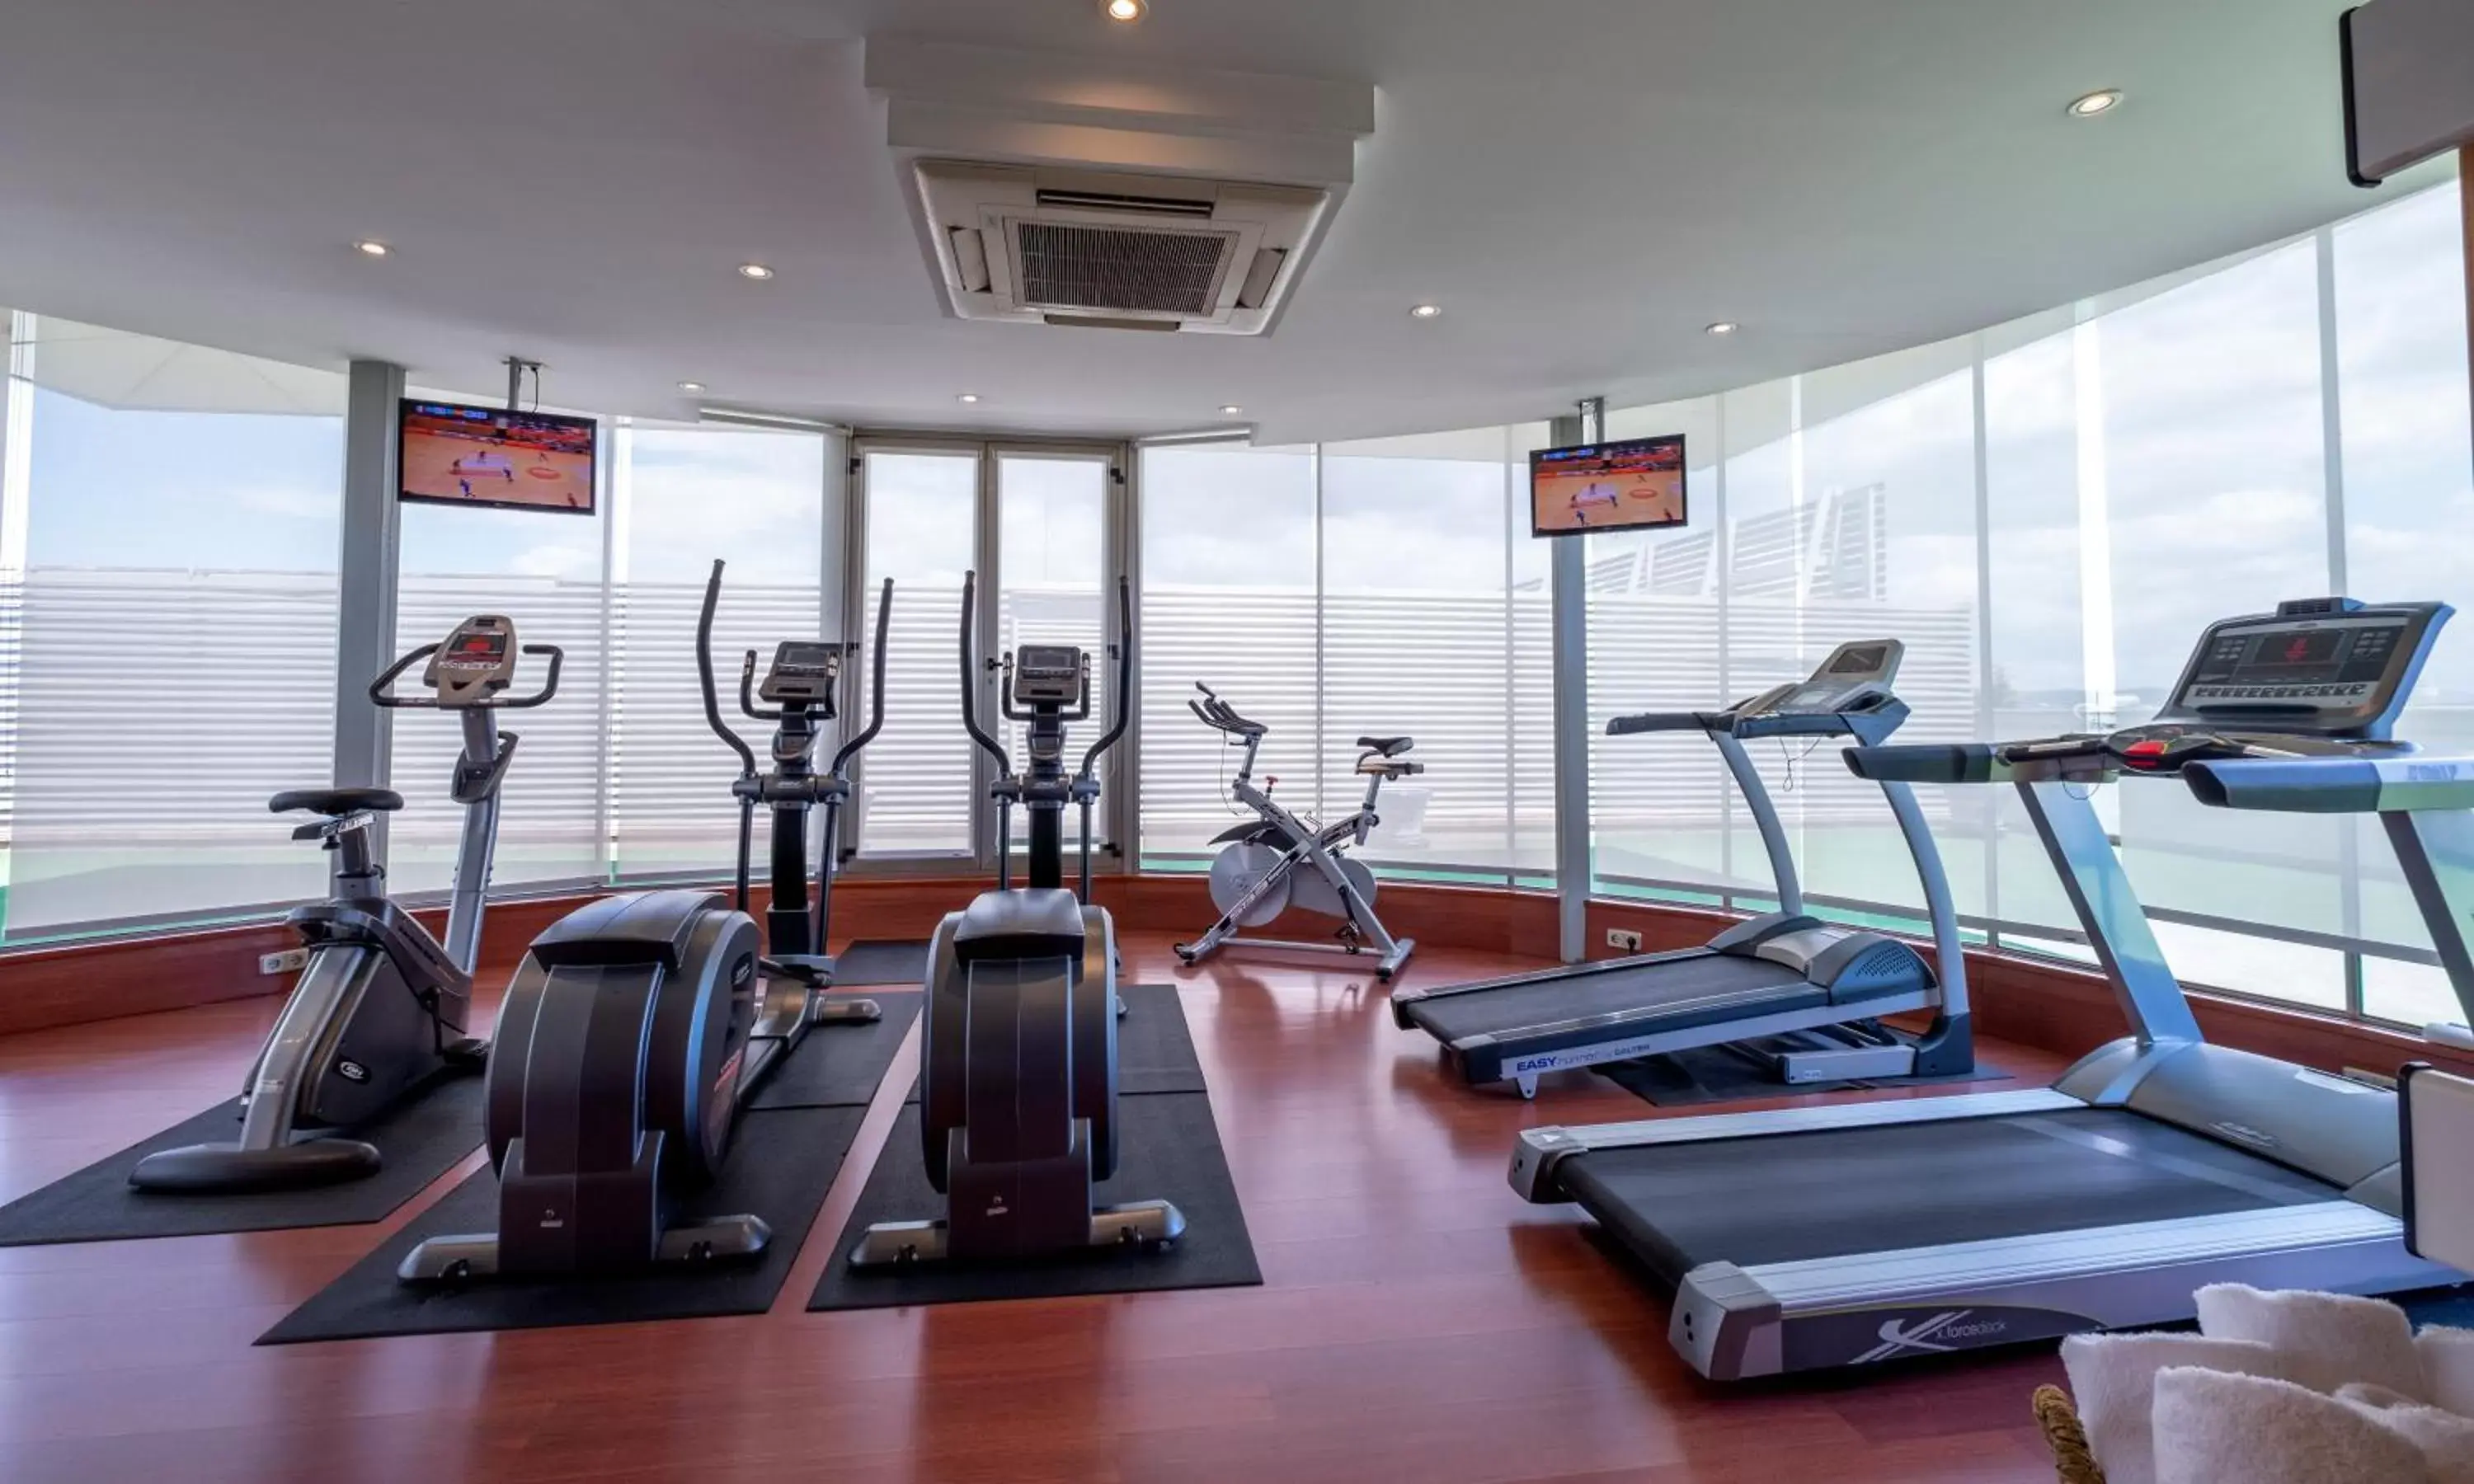 Fitness centre/facilities, Fitness Center/Facilities in Gran Hotel Attica21 Las Rozas